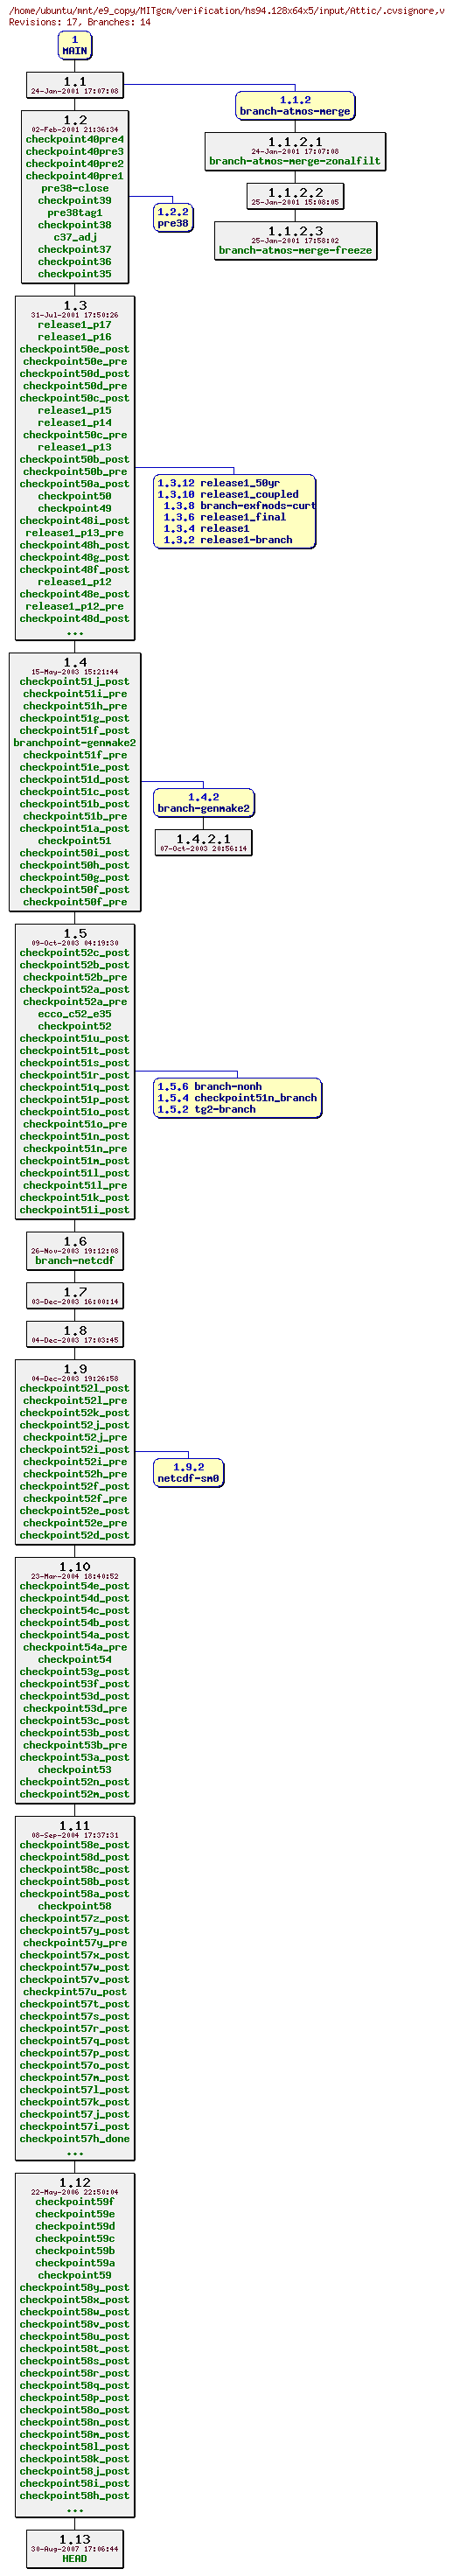 Revisions of MITgcm/verification/hs94.128x64x5/input/.cvsignore